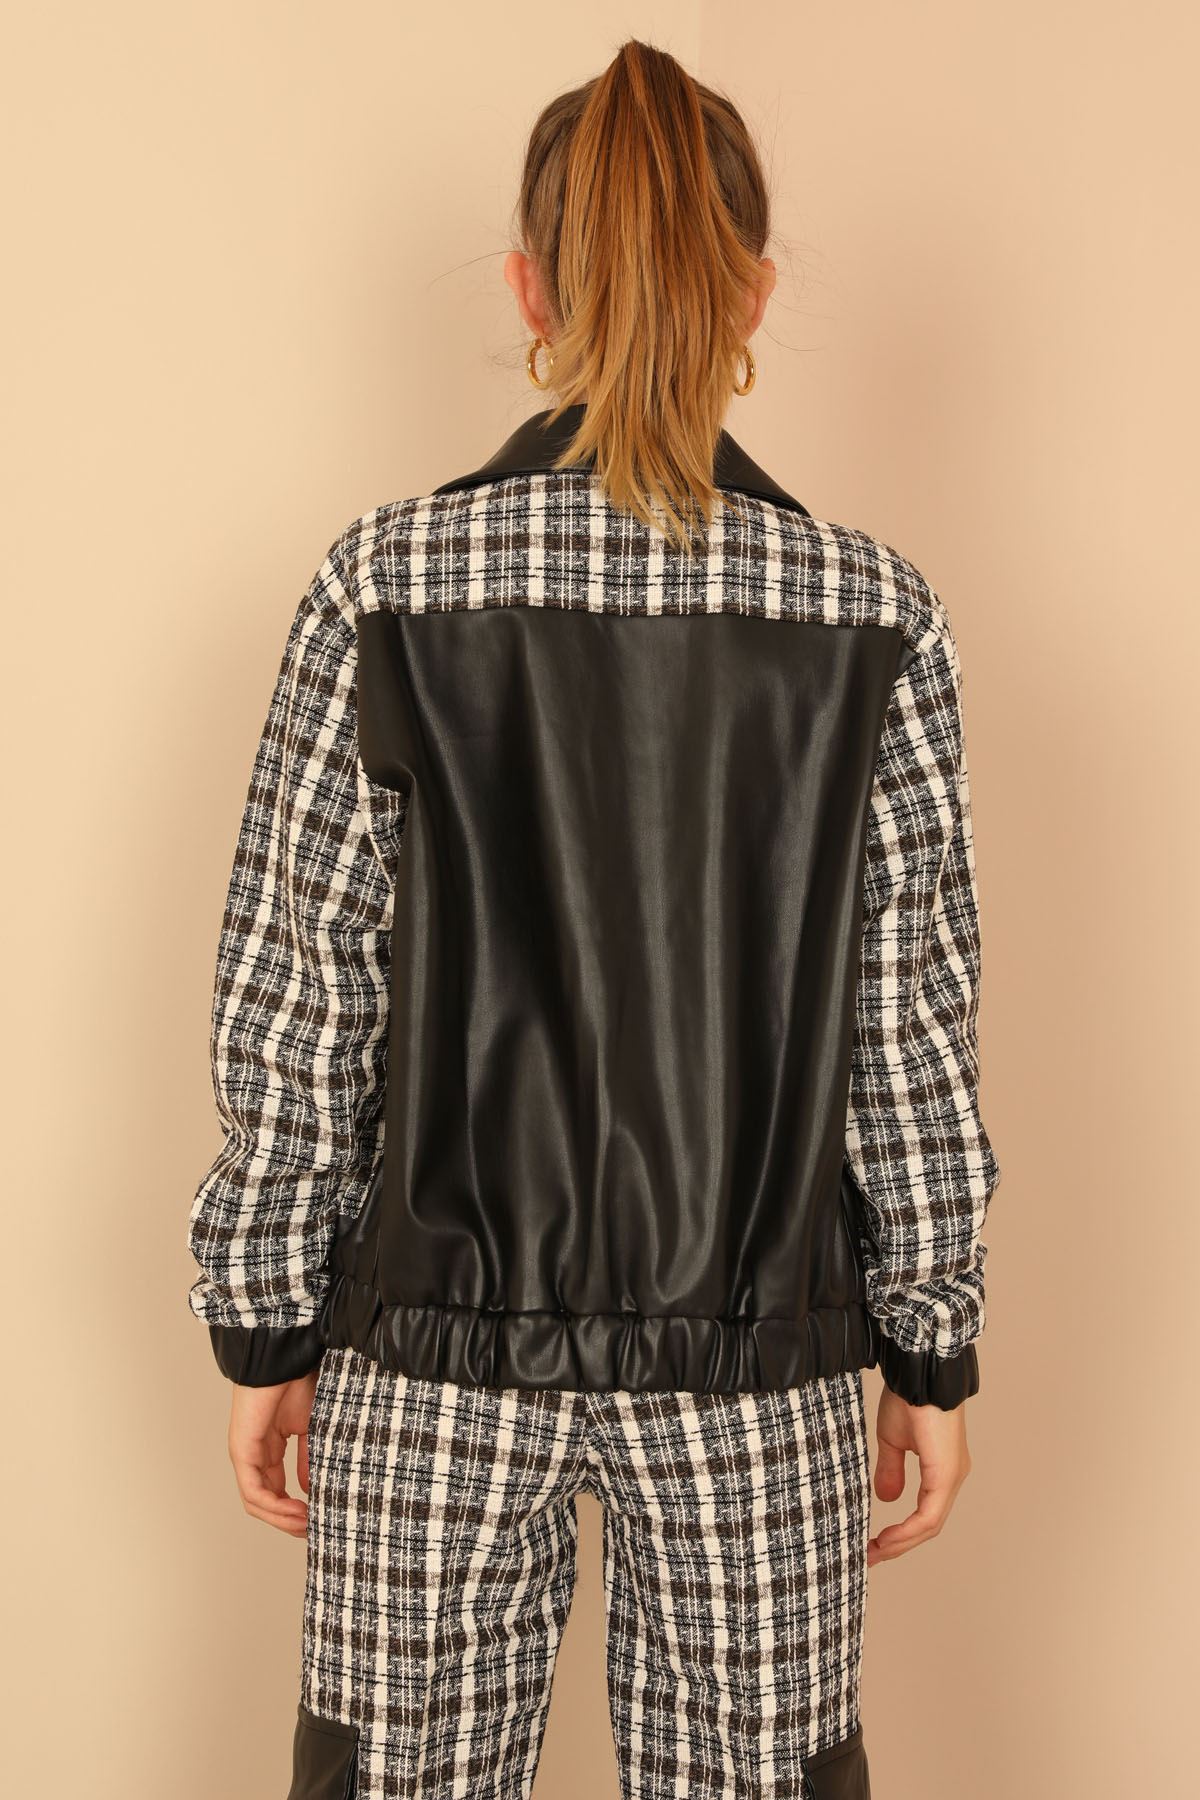 Channel Woven Fabrics Shirt Collar Hip Height Striped Women Jacket - Chanterelle 